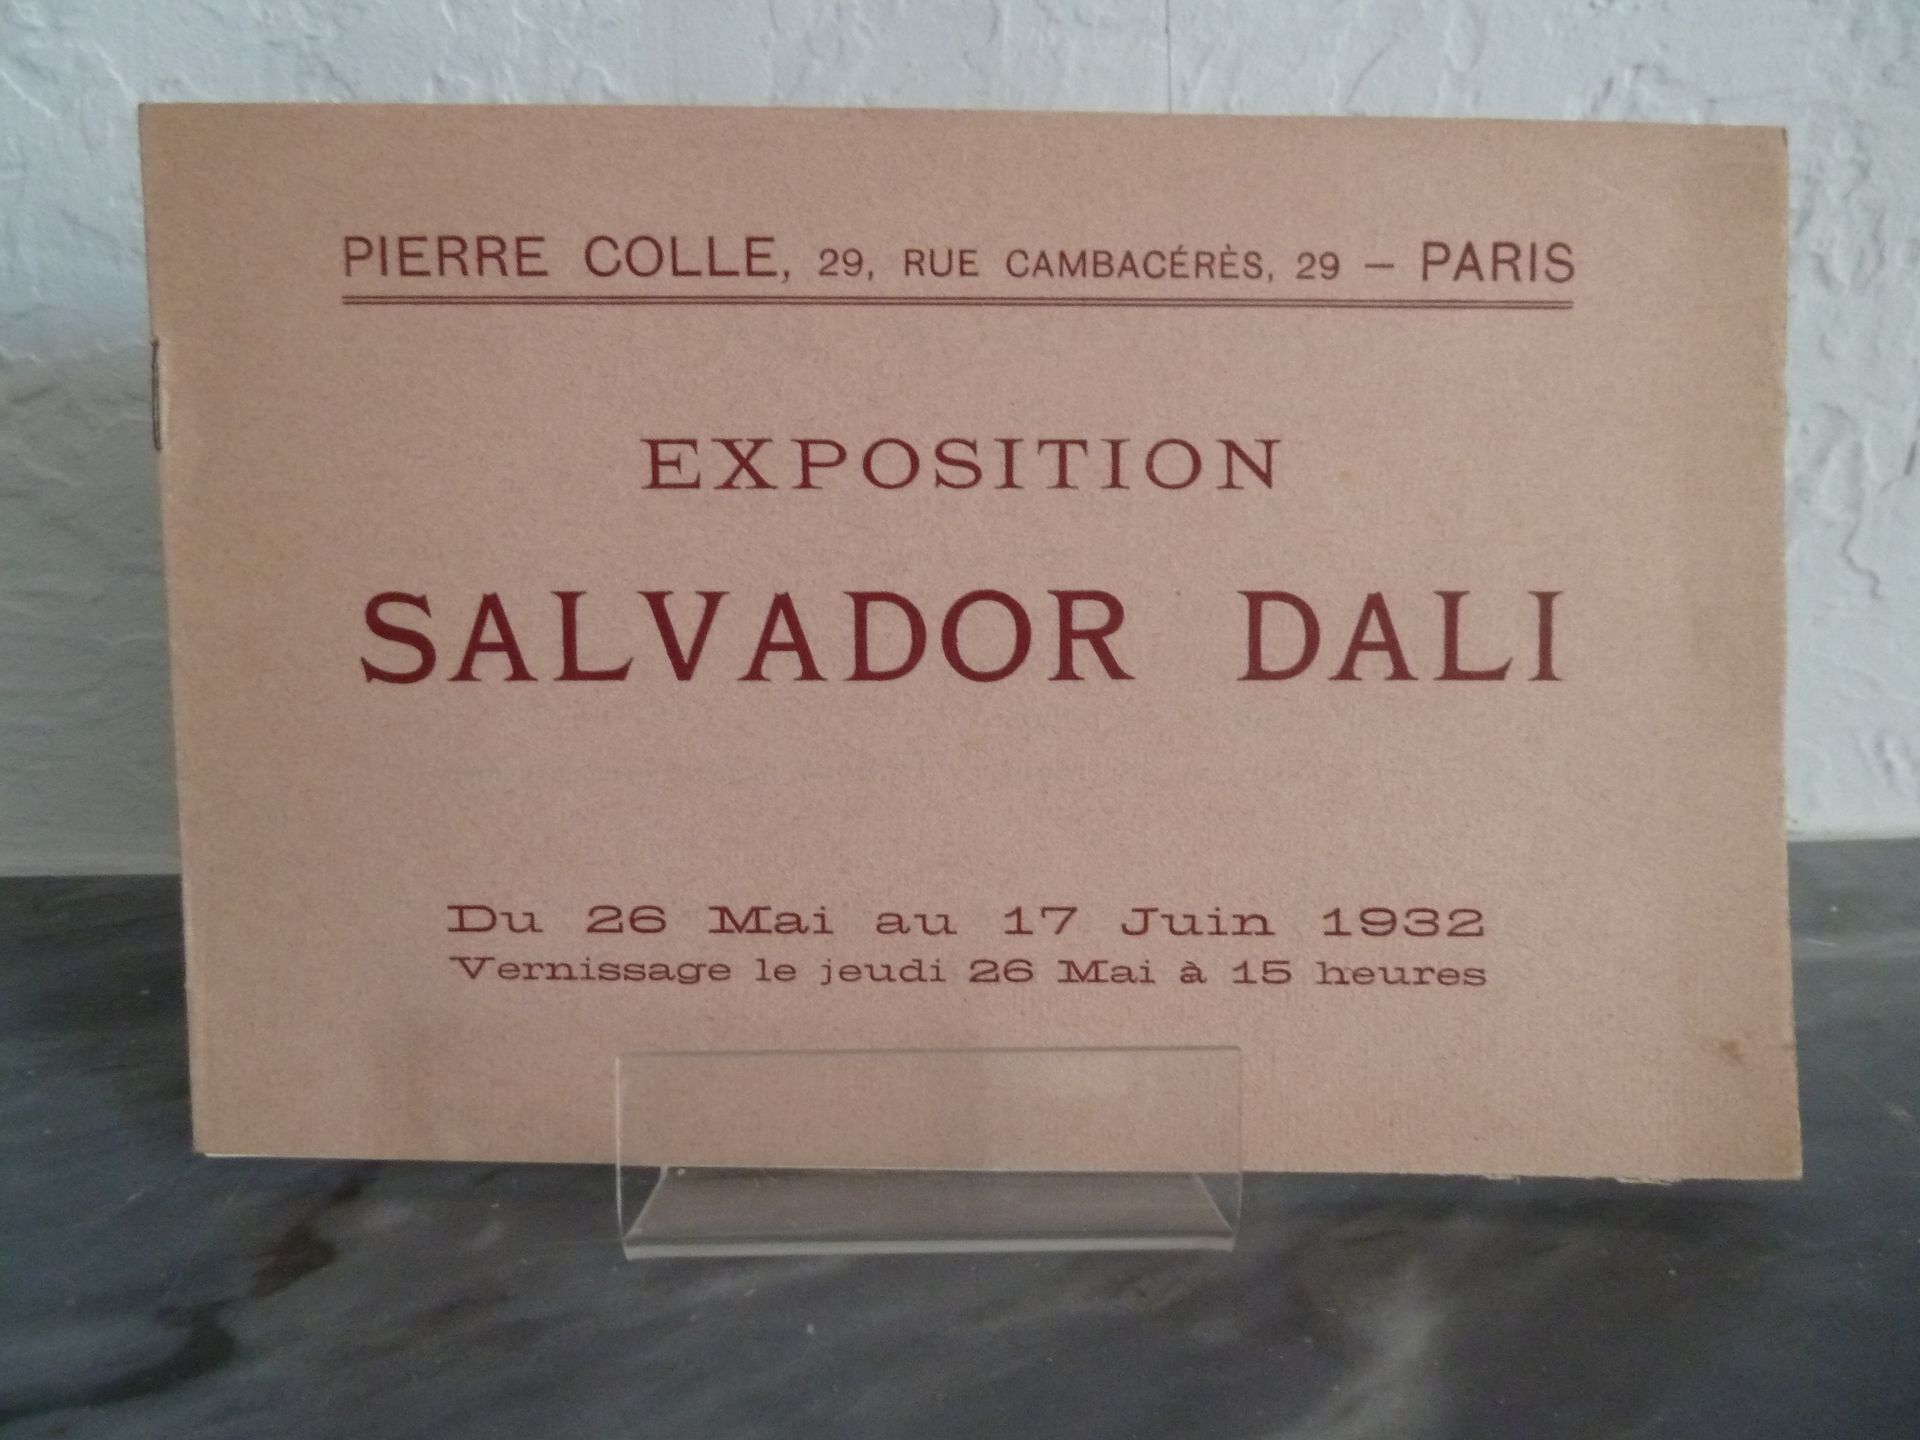 Null (Corti) DALI, Salvador :萨尔瓦多-达利1932年5月26日至6月17日的博览会。巴黎：皮埃尔-科勒，1932年。意大利风格的装&hellip;